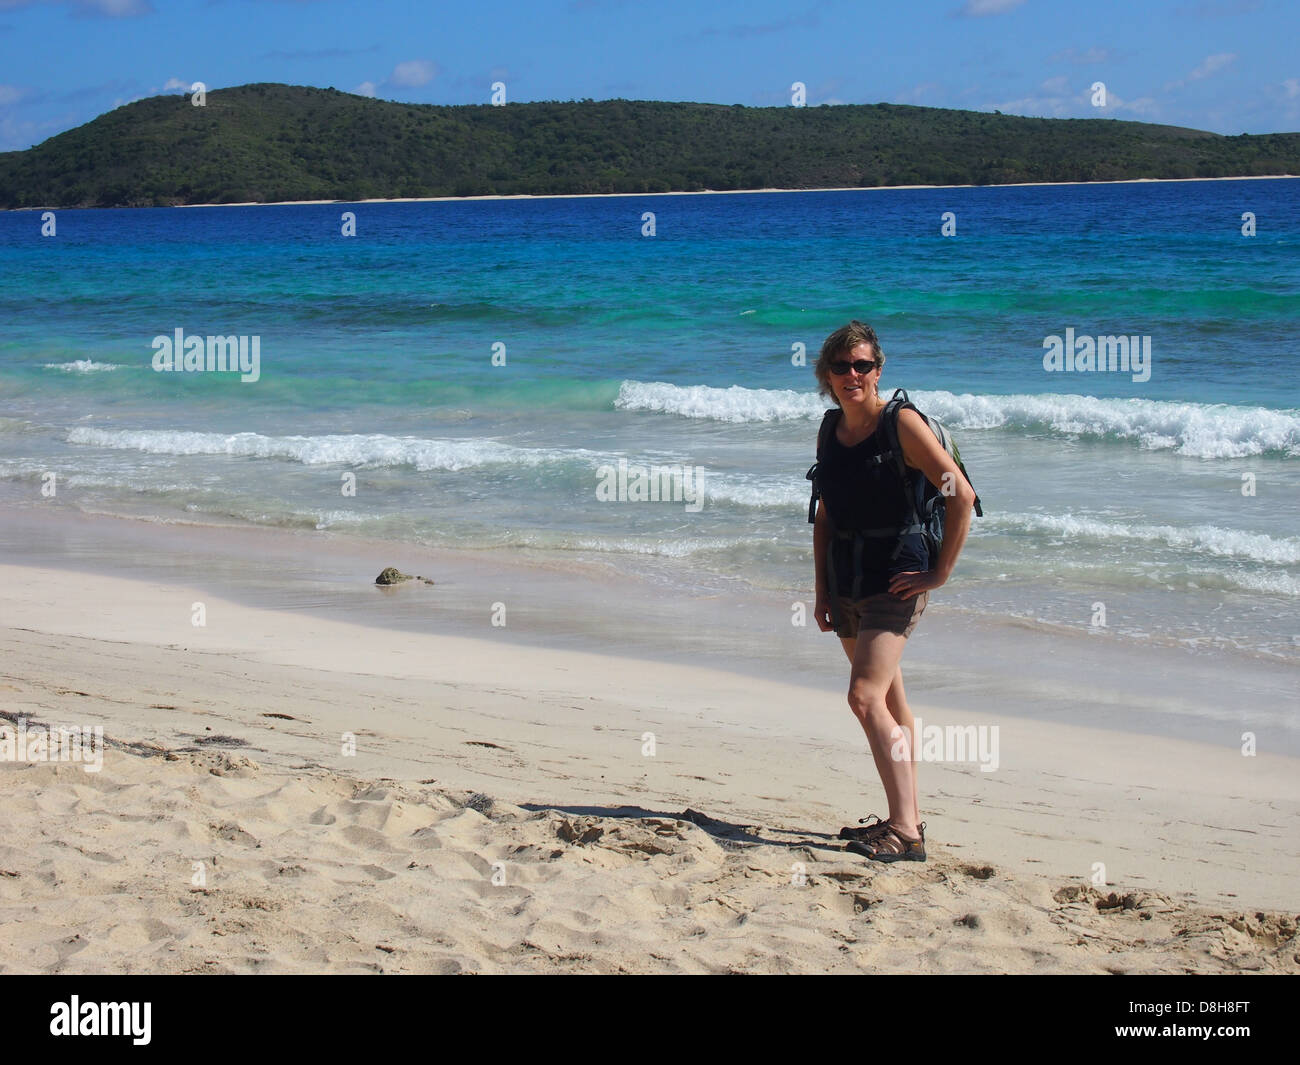 Woman on Caribbean sand beach Stock Photo